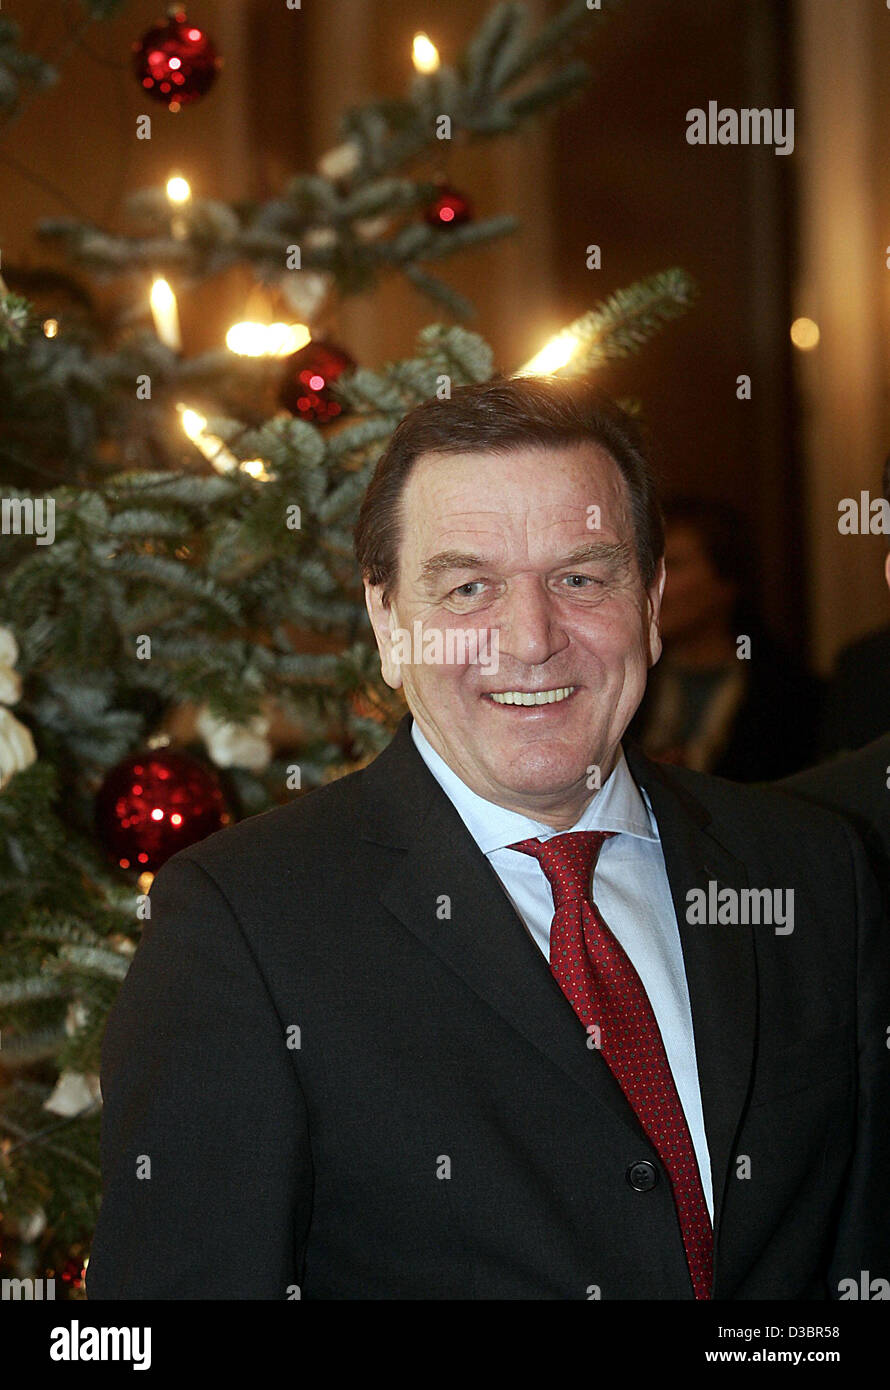 (Dpa) - wartet Bundeskanzler Gerhard Schroeder auf der russische Präsident Vladimir Putin vor einem Weihnachtsbaum im Atlantic Hotel in Hamburg, Deutschland, Montag, 20. Dezember 2004. Ihre Gespräche konzentrieren sich auf Kooperationen im Bereich Wirtschaft und in der Forschung. (POOL) Stockfoto